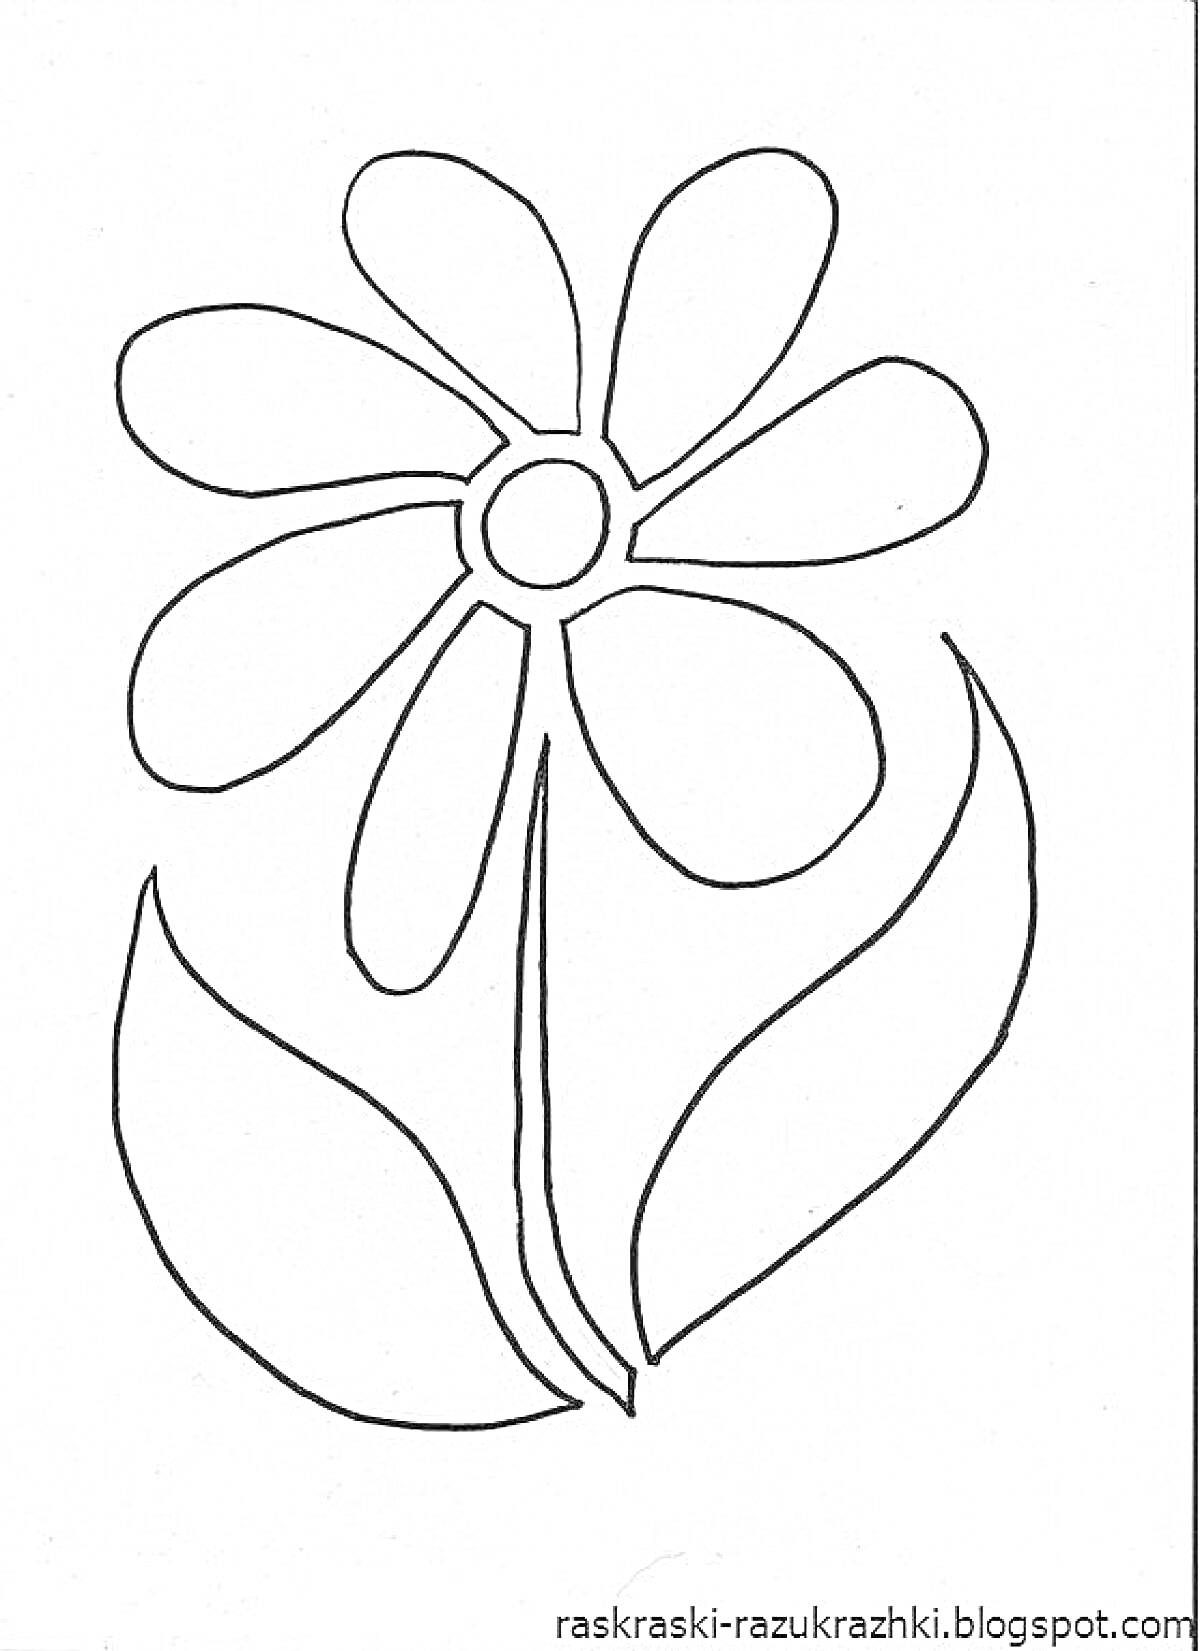 Раскраска Цветик семицветик с шестью лепестками и двумя листьями на стебле